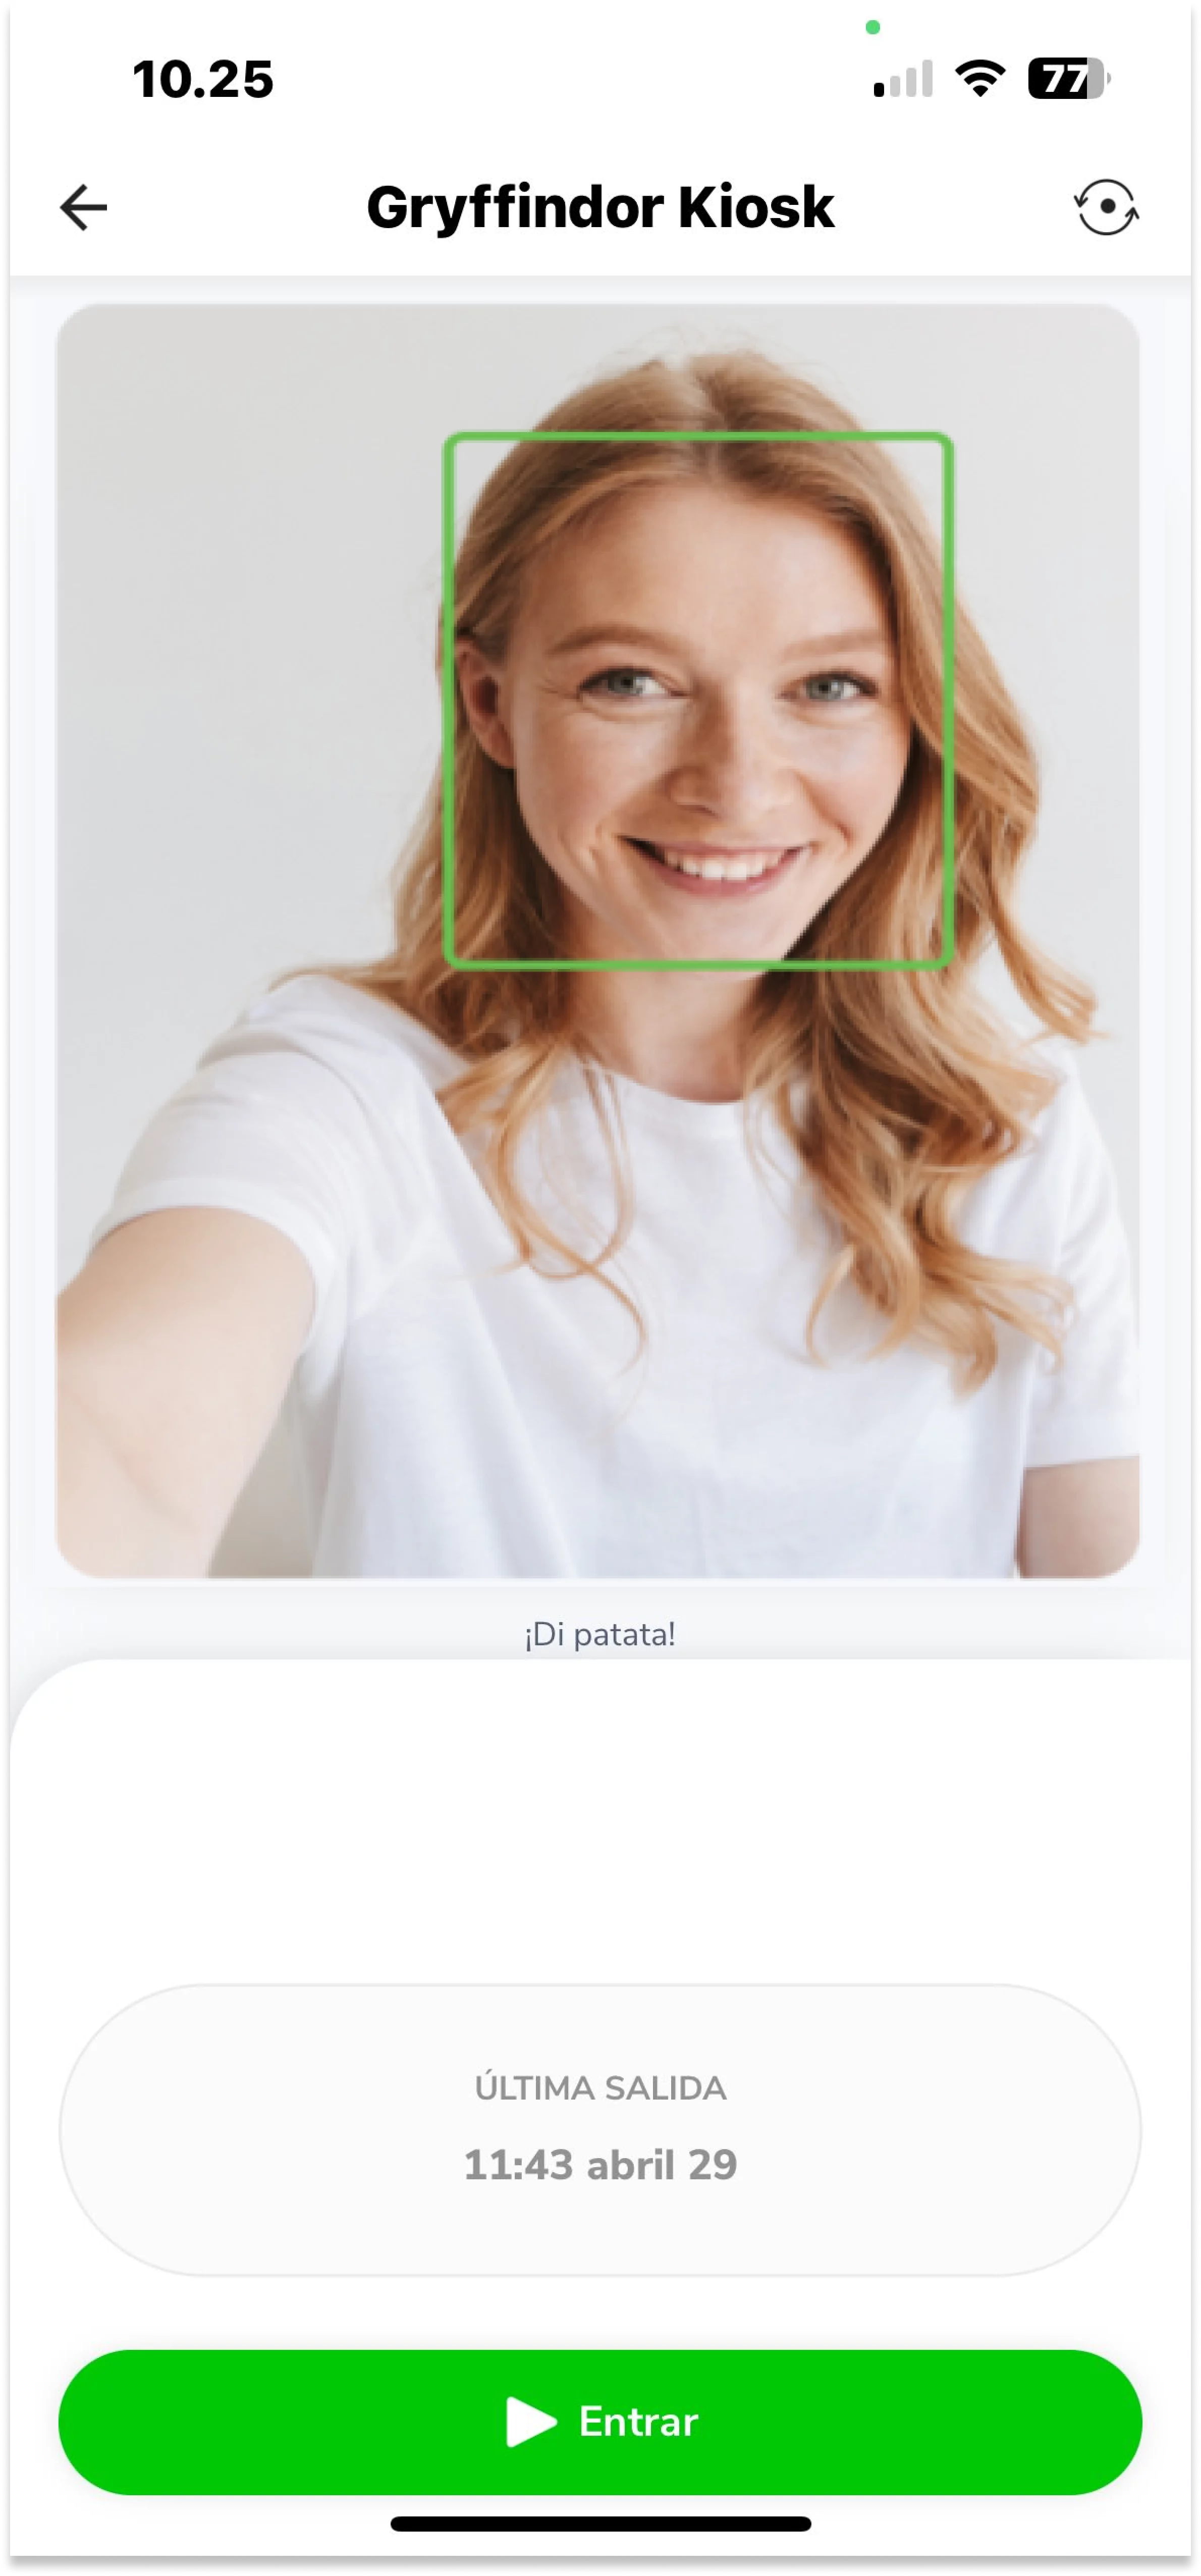 Cuando fiches a la entrada y a la salida, puedes decidir utilizar el reconocimiento facial con dos fines: